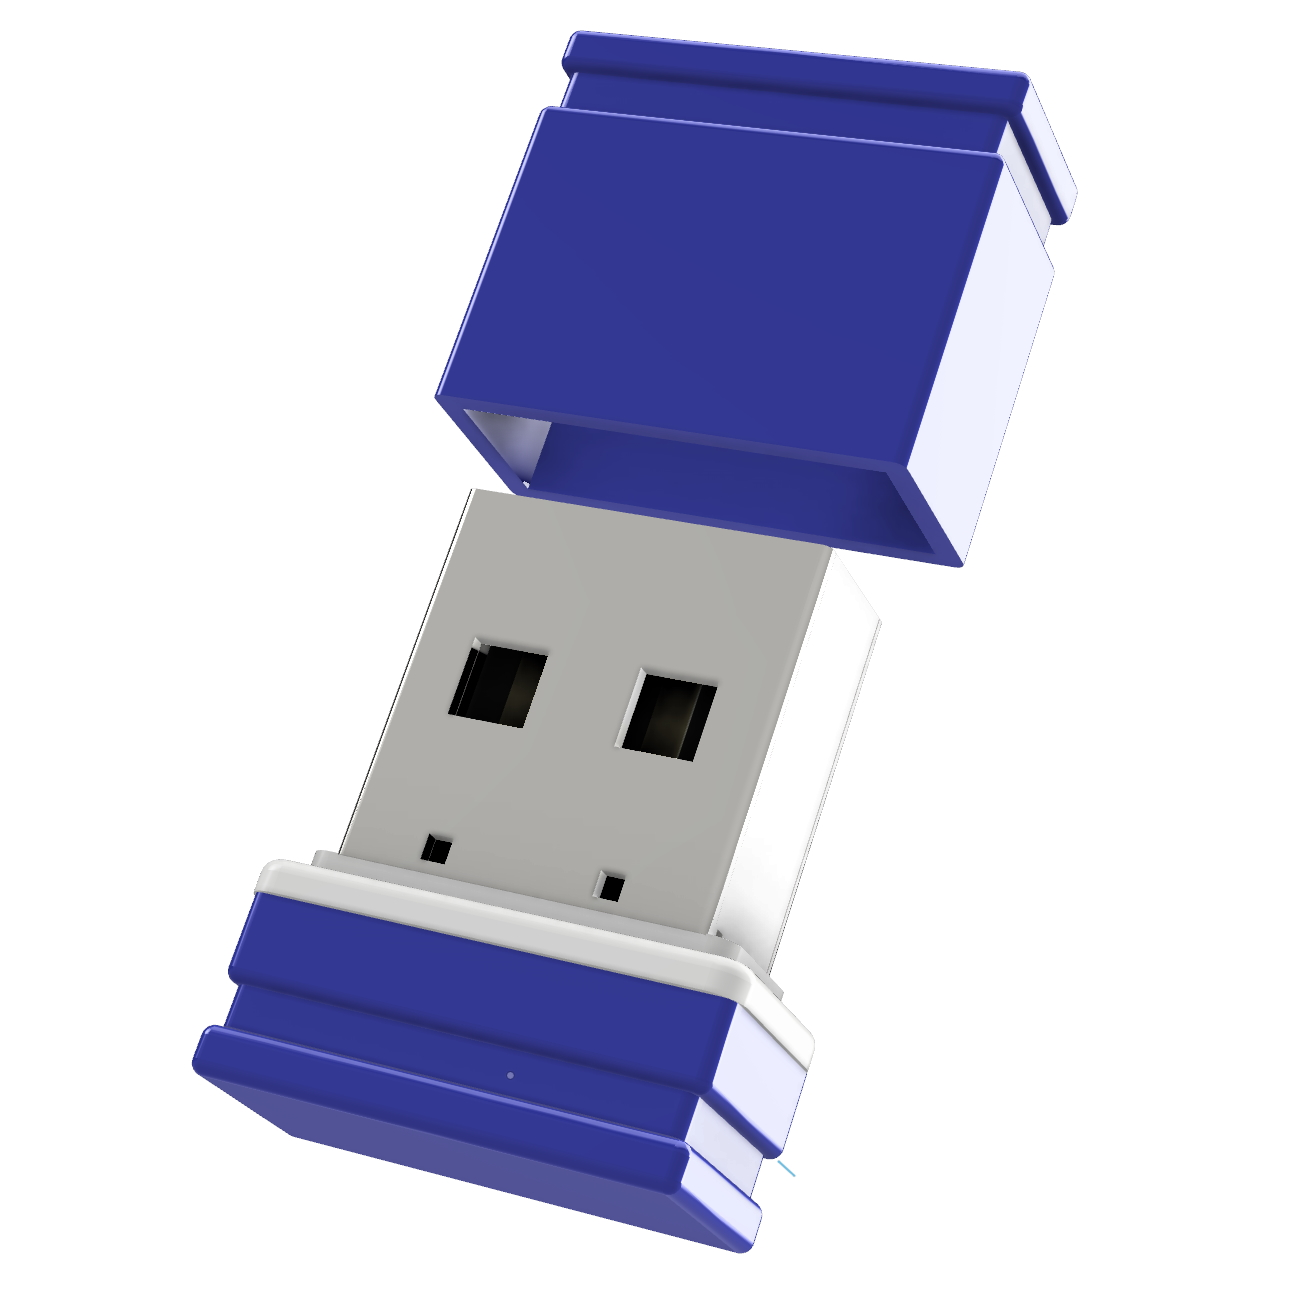 GERMANY USB (Blau/Weiss, Mini ®ULTRA USB-Stick GB) P1 32